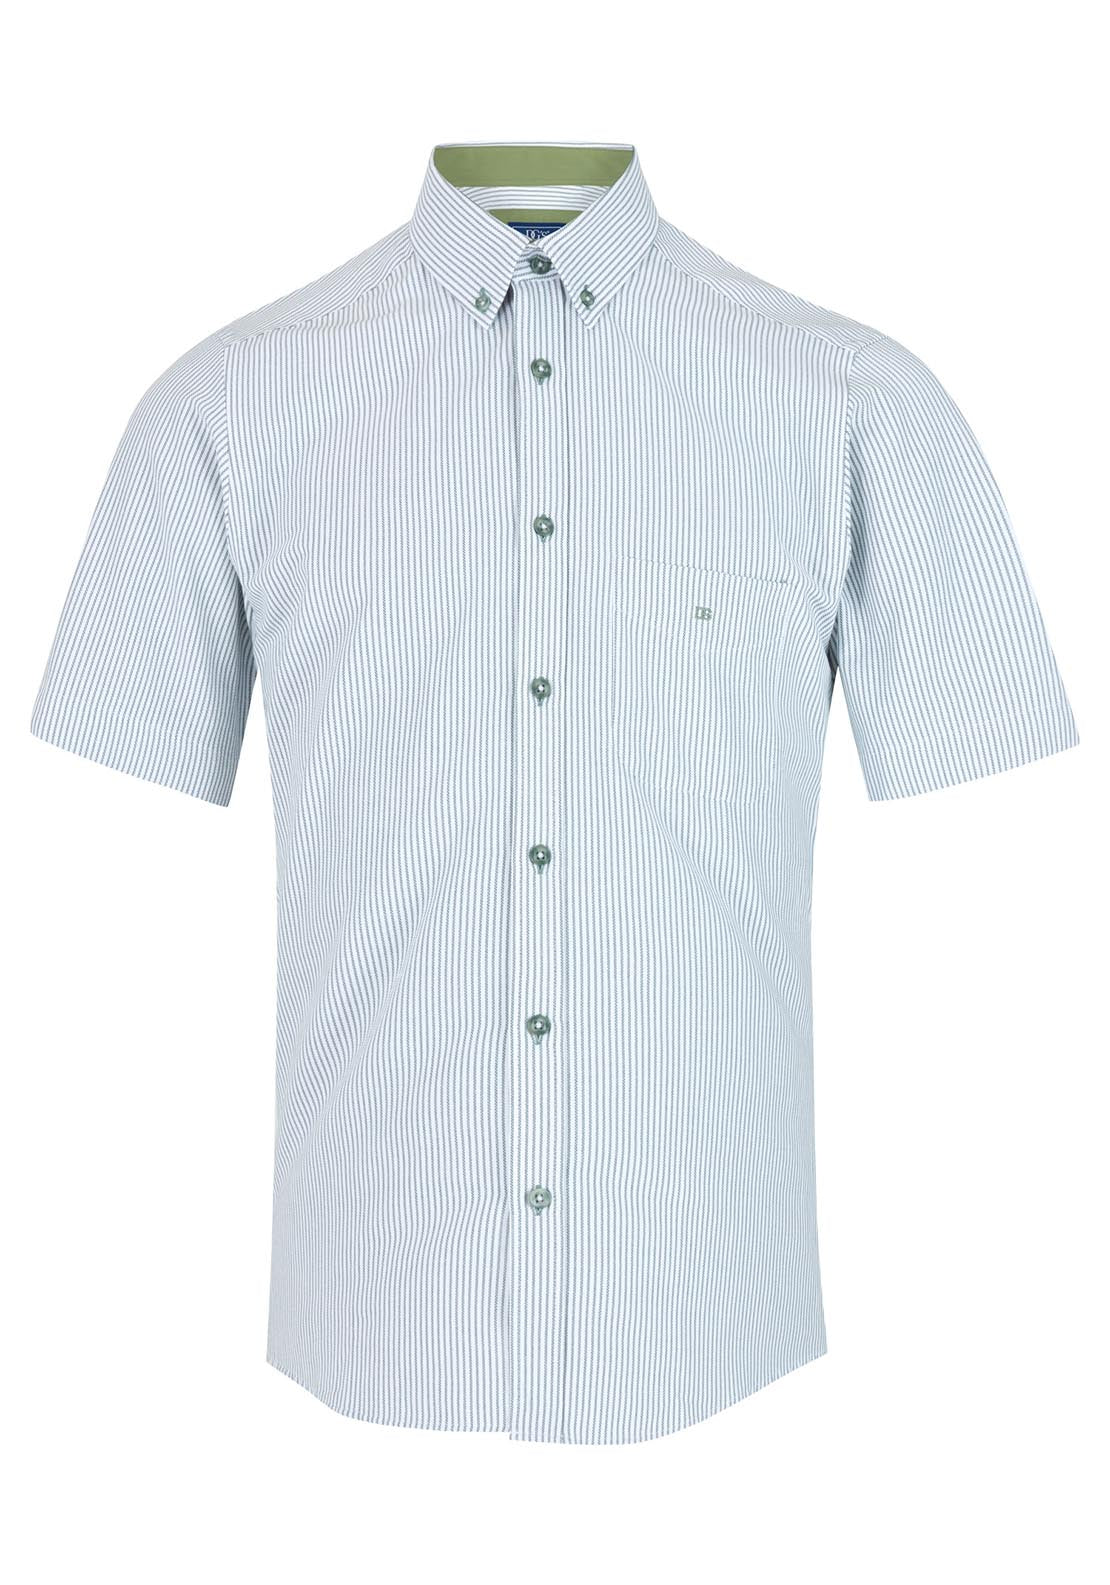 Drifter Short Sleeve Stripe Shirt - Green 1 Shaws Department Stores